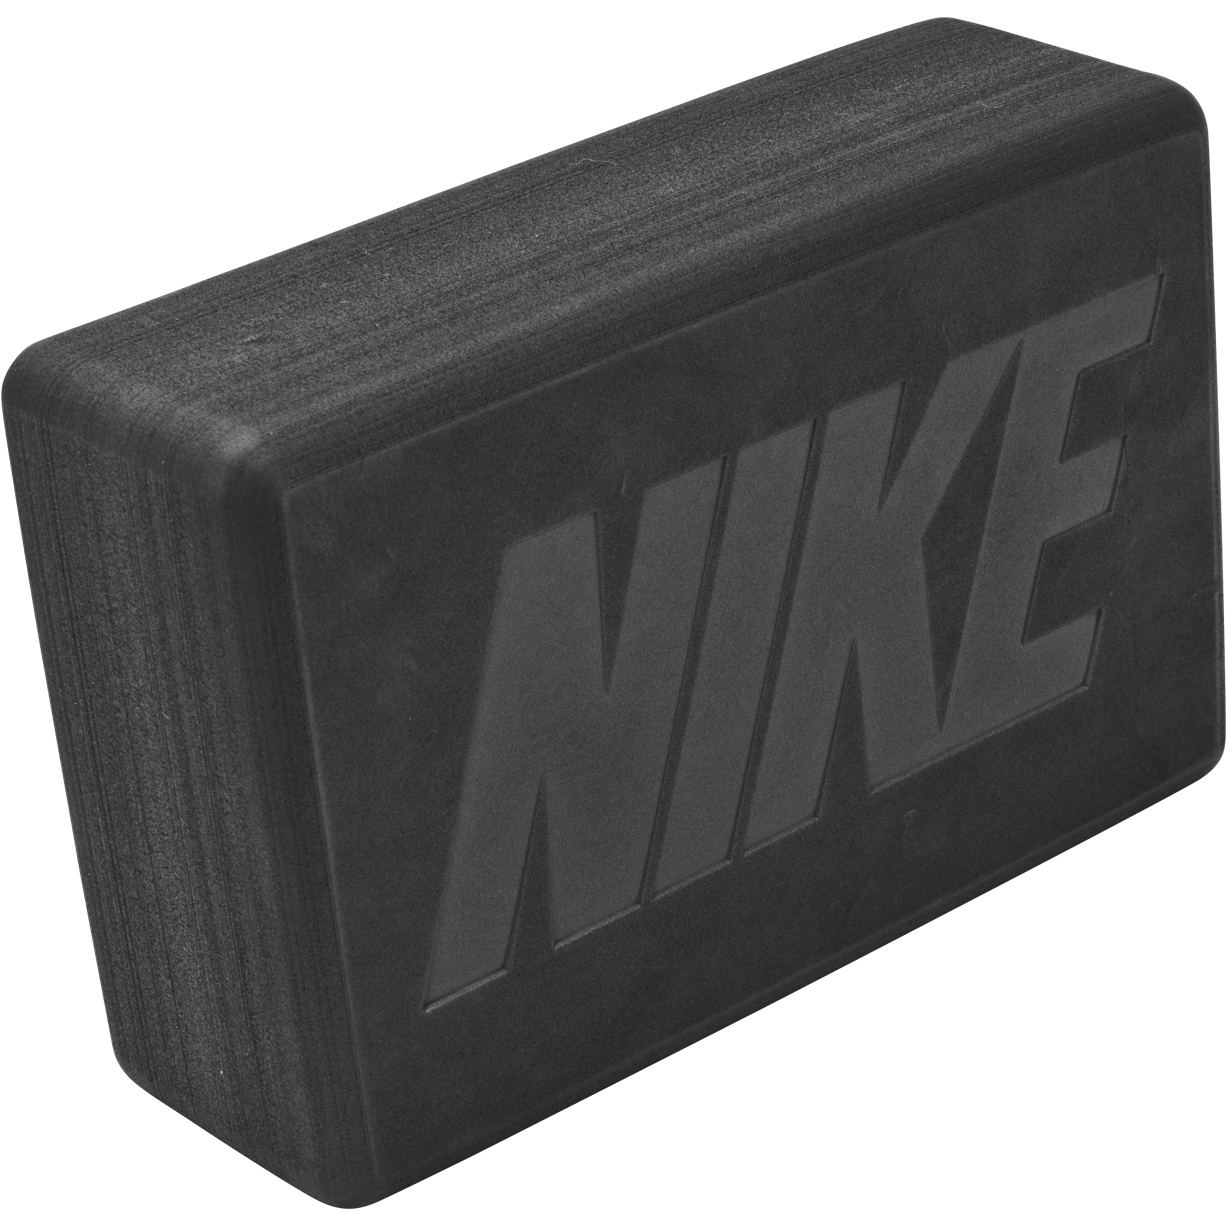 Produktbild von Nike Yoga-Block - anthracite/anthracite 008